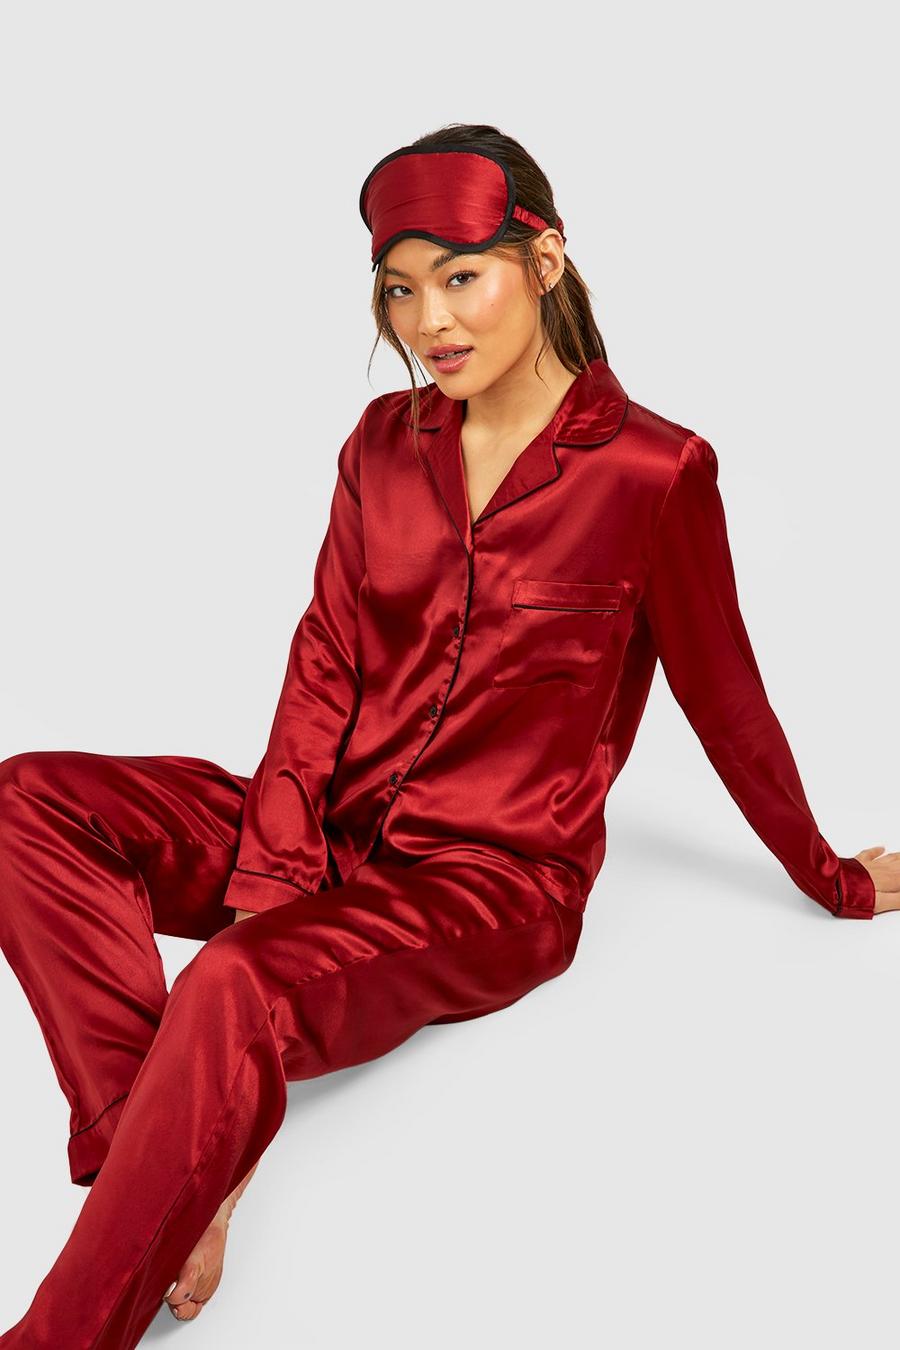 Red Pyjama Geschenkset Met Slaapmasker En Elastiekje